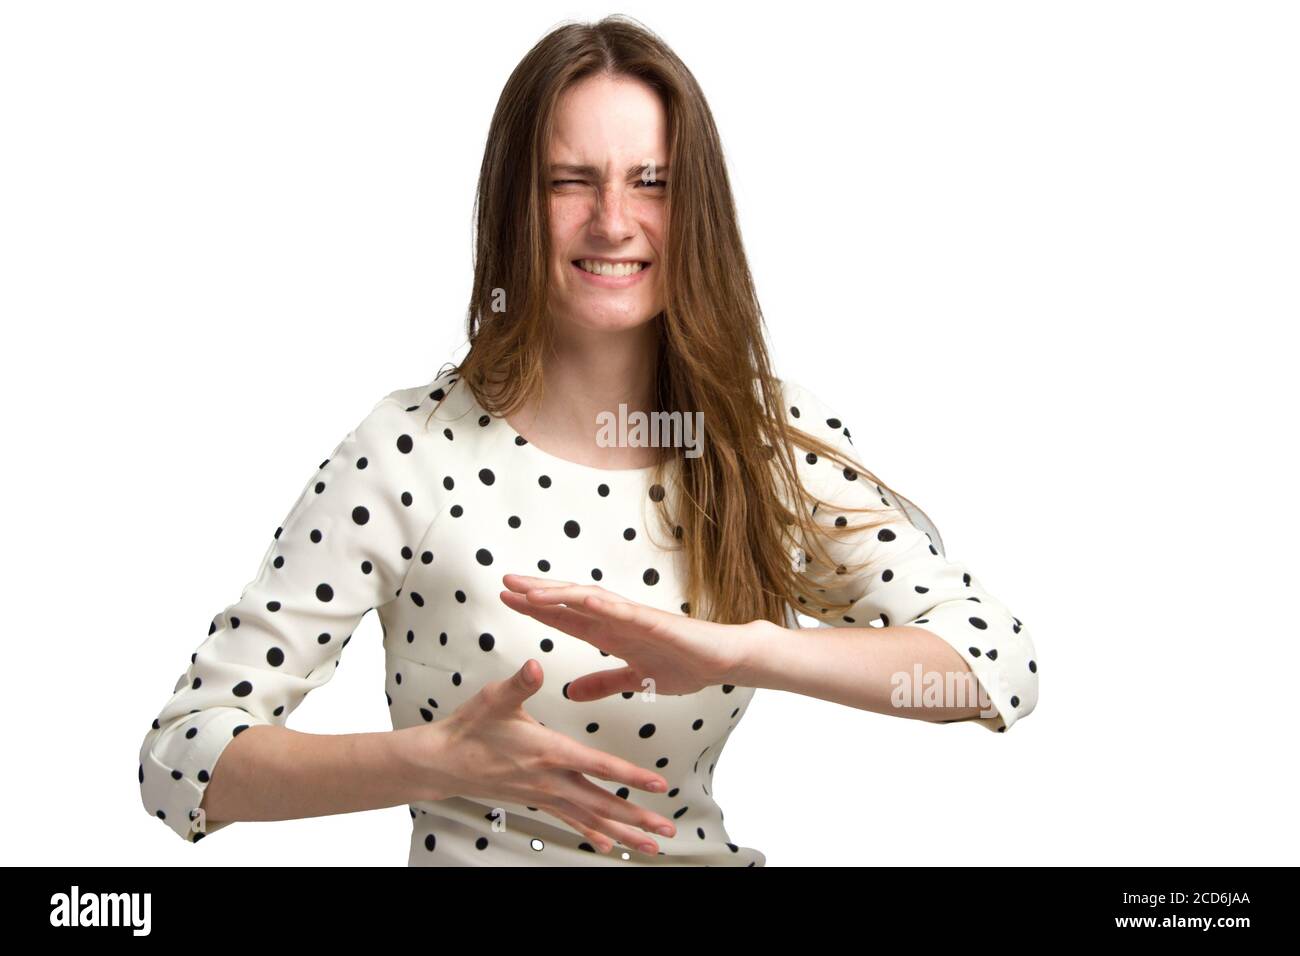 Eine junge Frau mit langen braunen Haaren und einem weißen Polka-Dot-Kleid. Mit einem unzufriedenen, angespannten emotionalen Gesicht. Hält seine Hände horizontal parallel zur Handfläche vor ihm. Isoliert auf Weiß Stockfoto